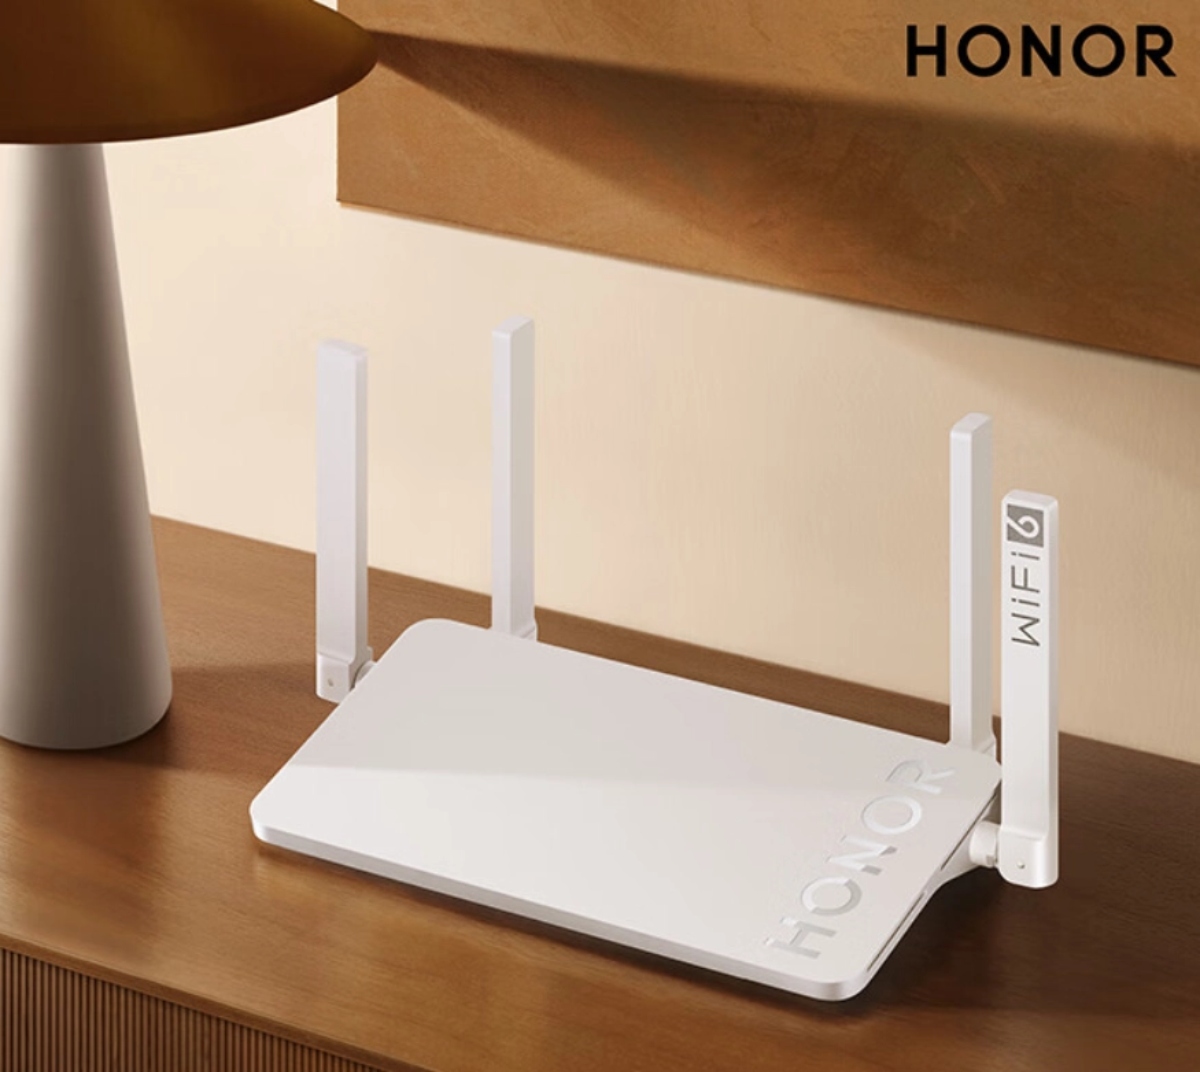 شركة هونر تطلق راوتر Honor Router X4 Pro يدعم اتصال Wi-Fi 6.0 وثلاثة منافذ والمزيد  